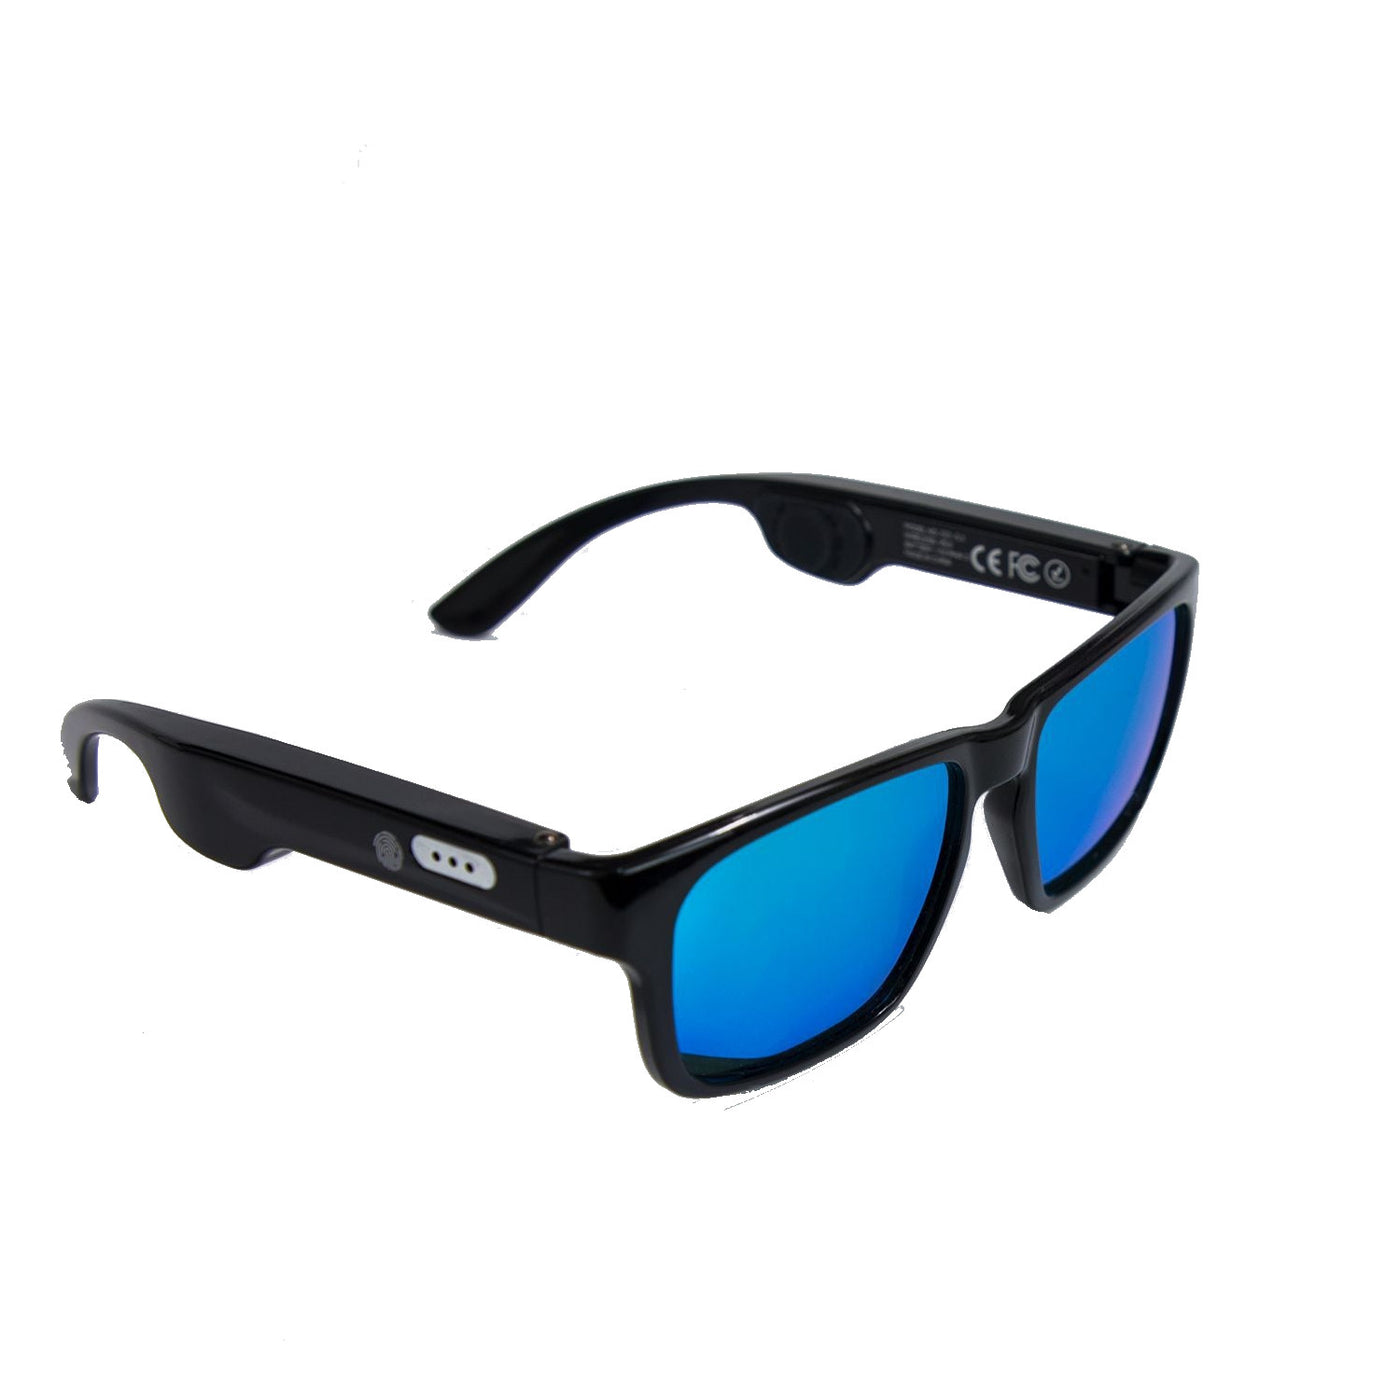 Breakfader G3 SMART Bluetooth Audio Sunglasses 